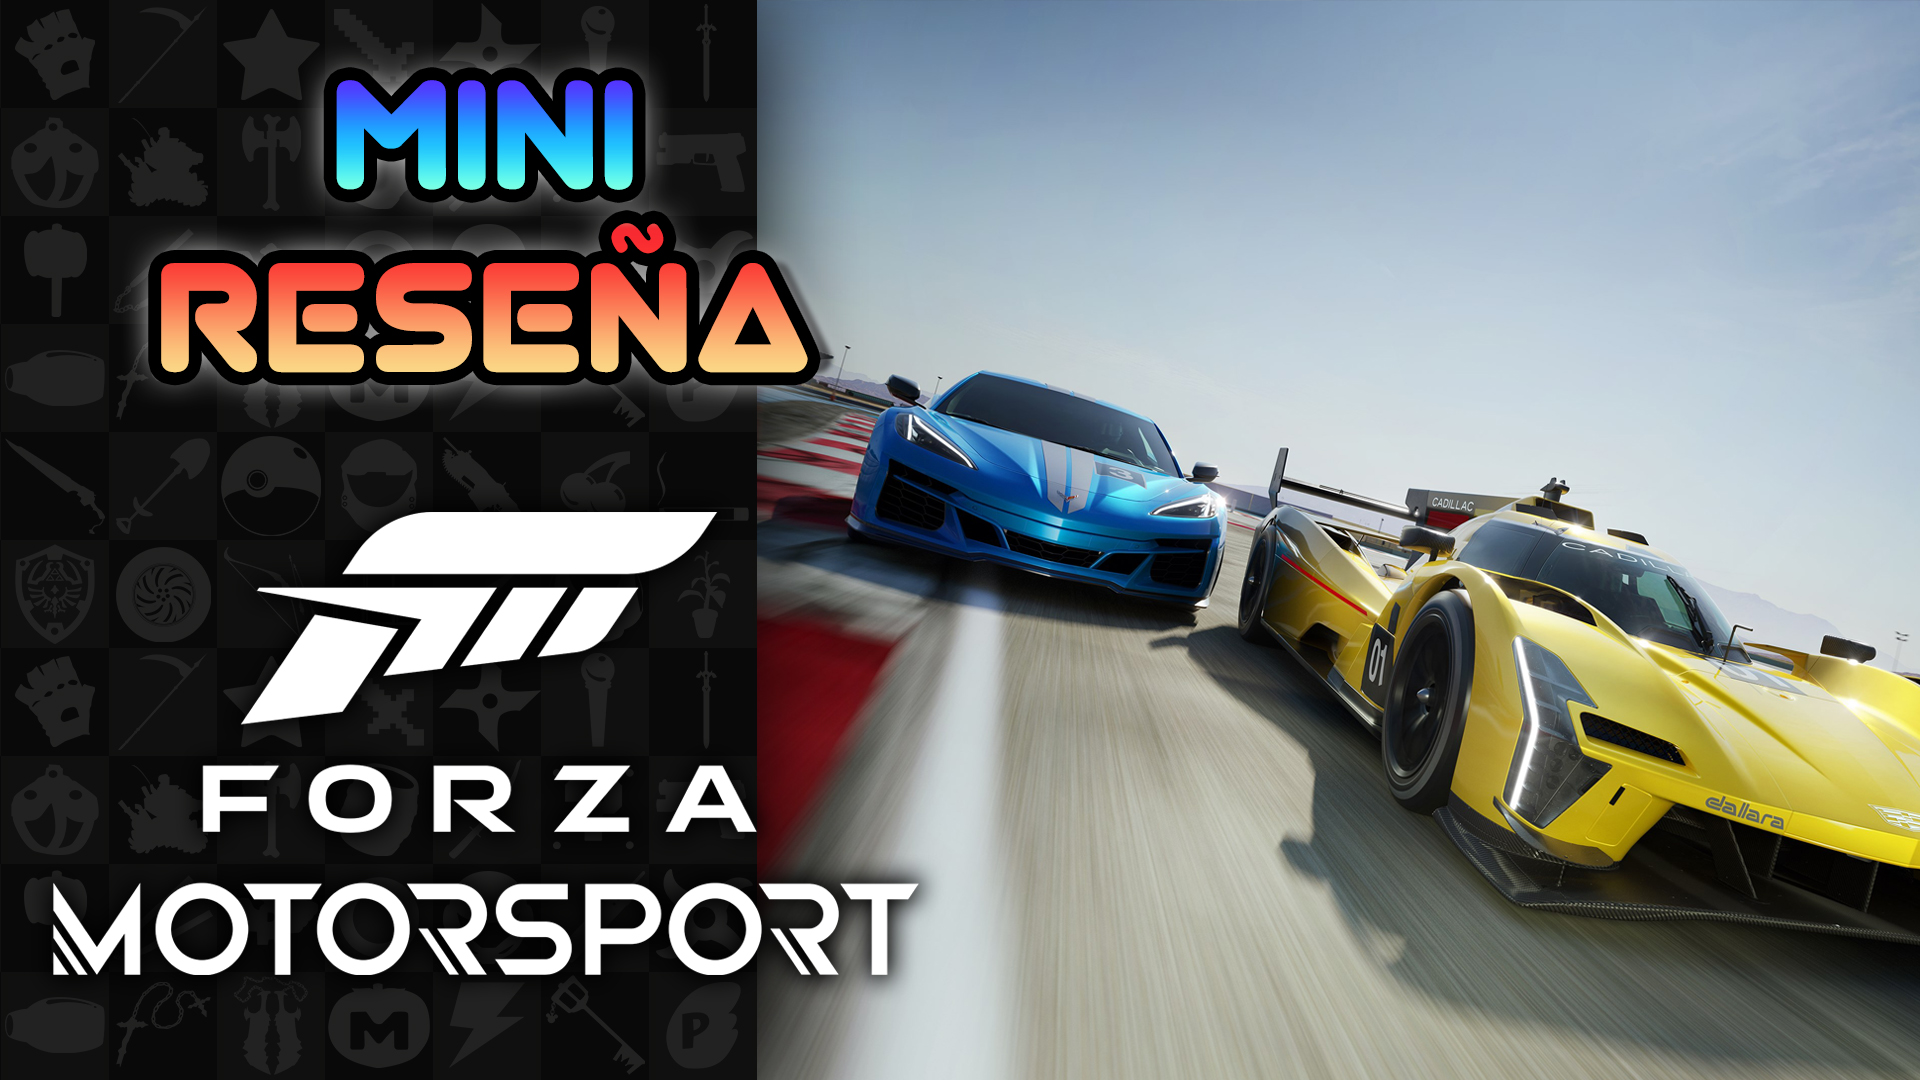 Mini Reseña Forza Motorsport – Arrancando con Firmeza